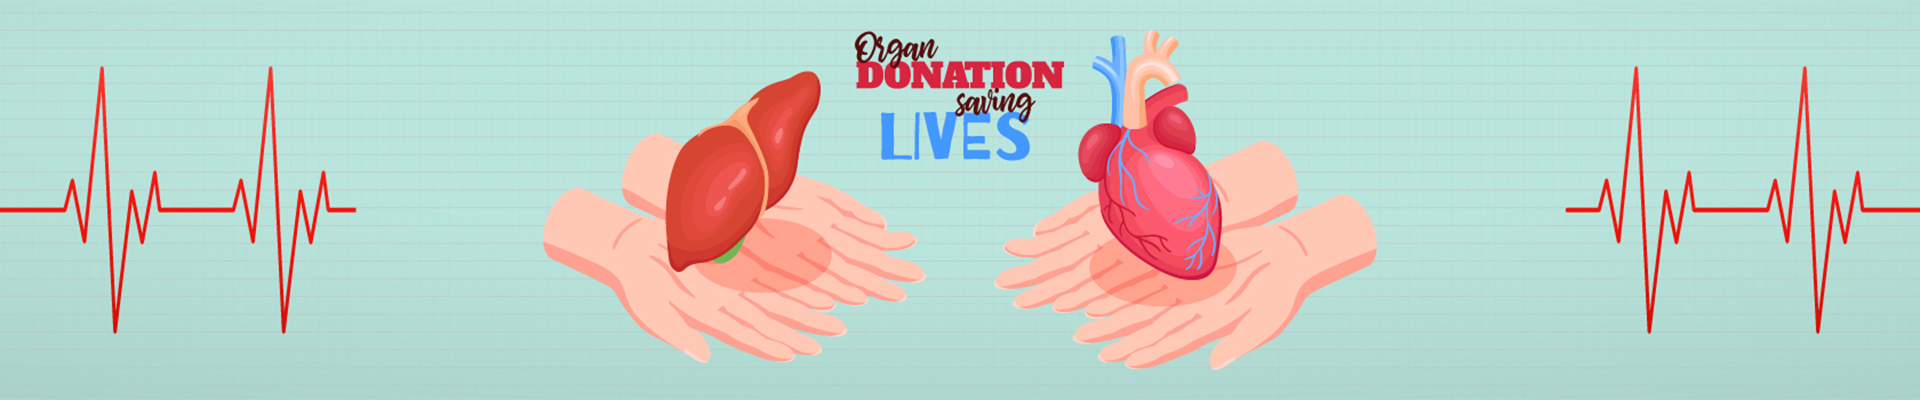 organ donation Mumbai